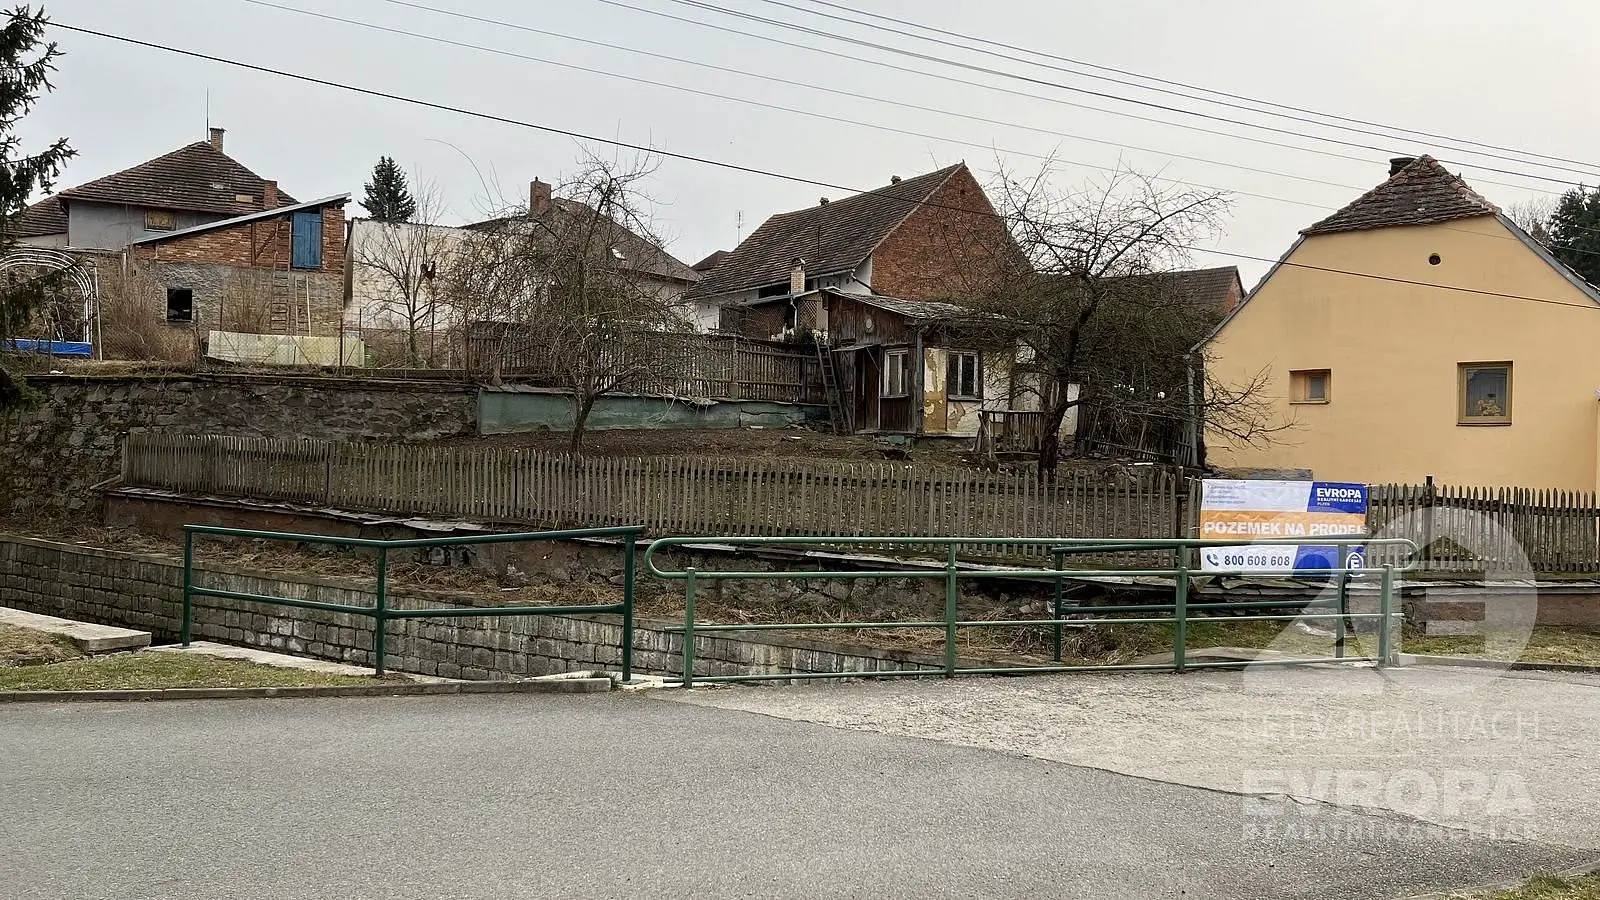 V potocích, Štěnovice, okres Plzeň-Jih